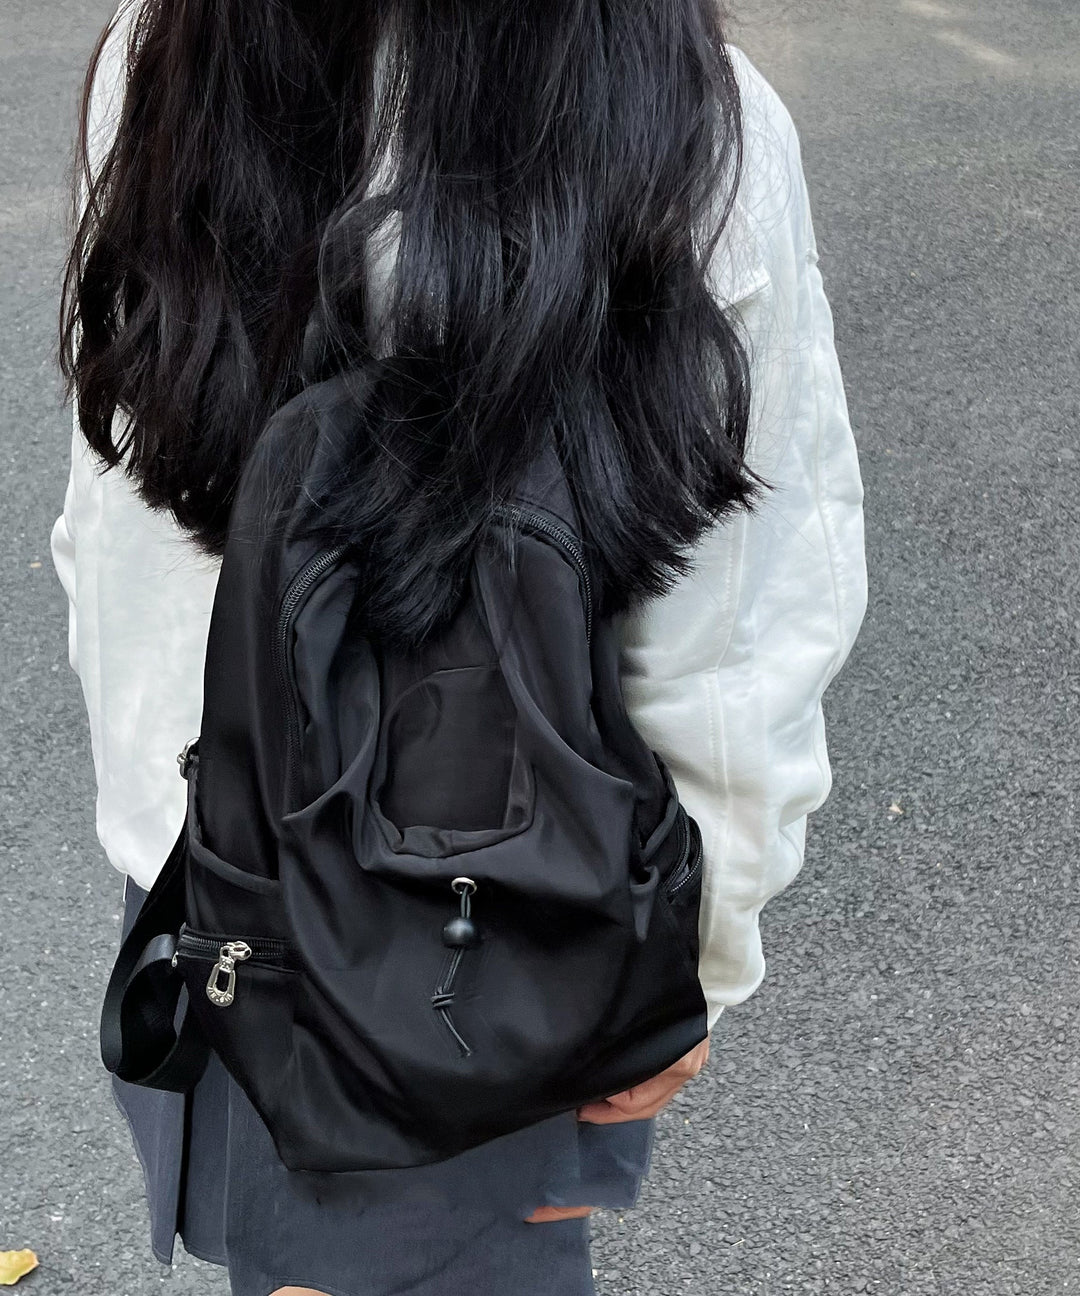 Simple Black Large Capacity Versatile Backpack Bag